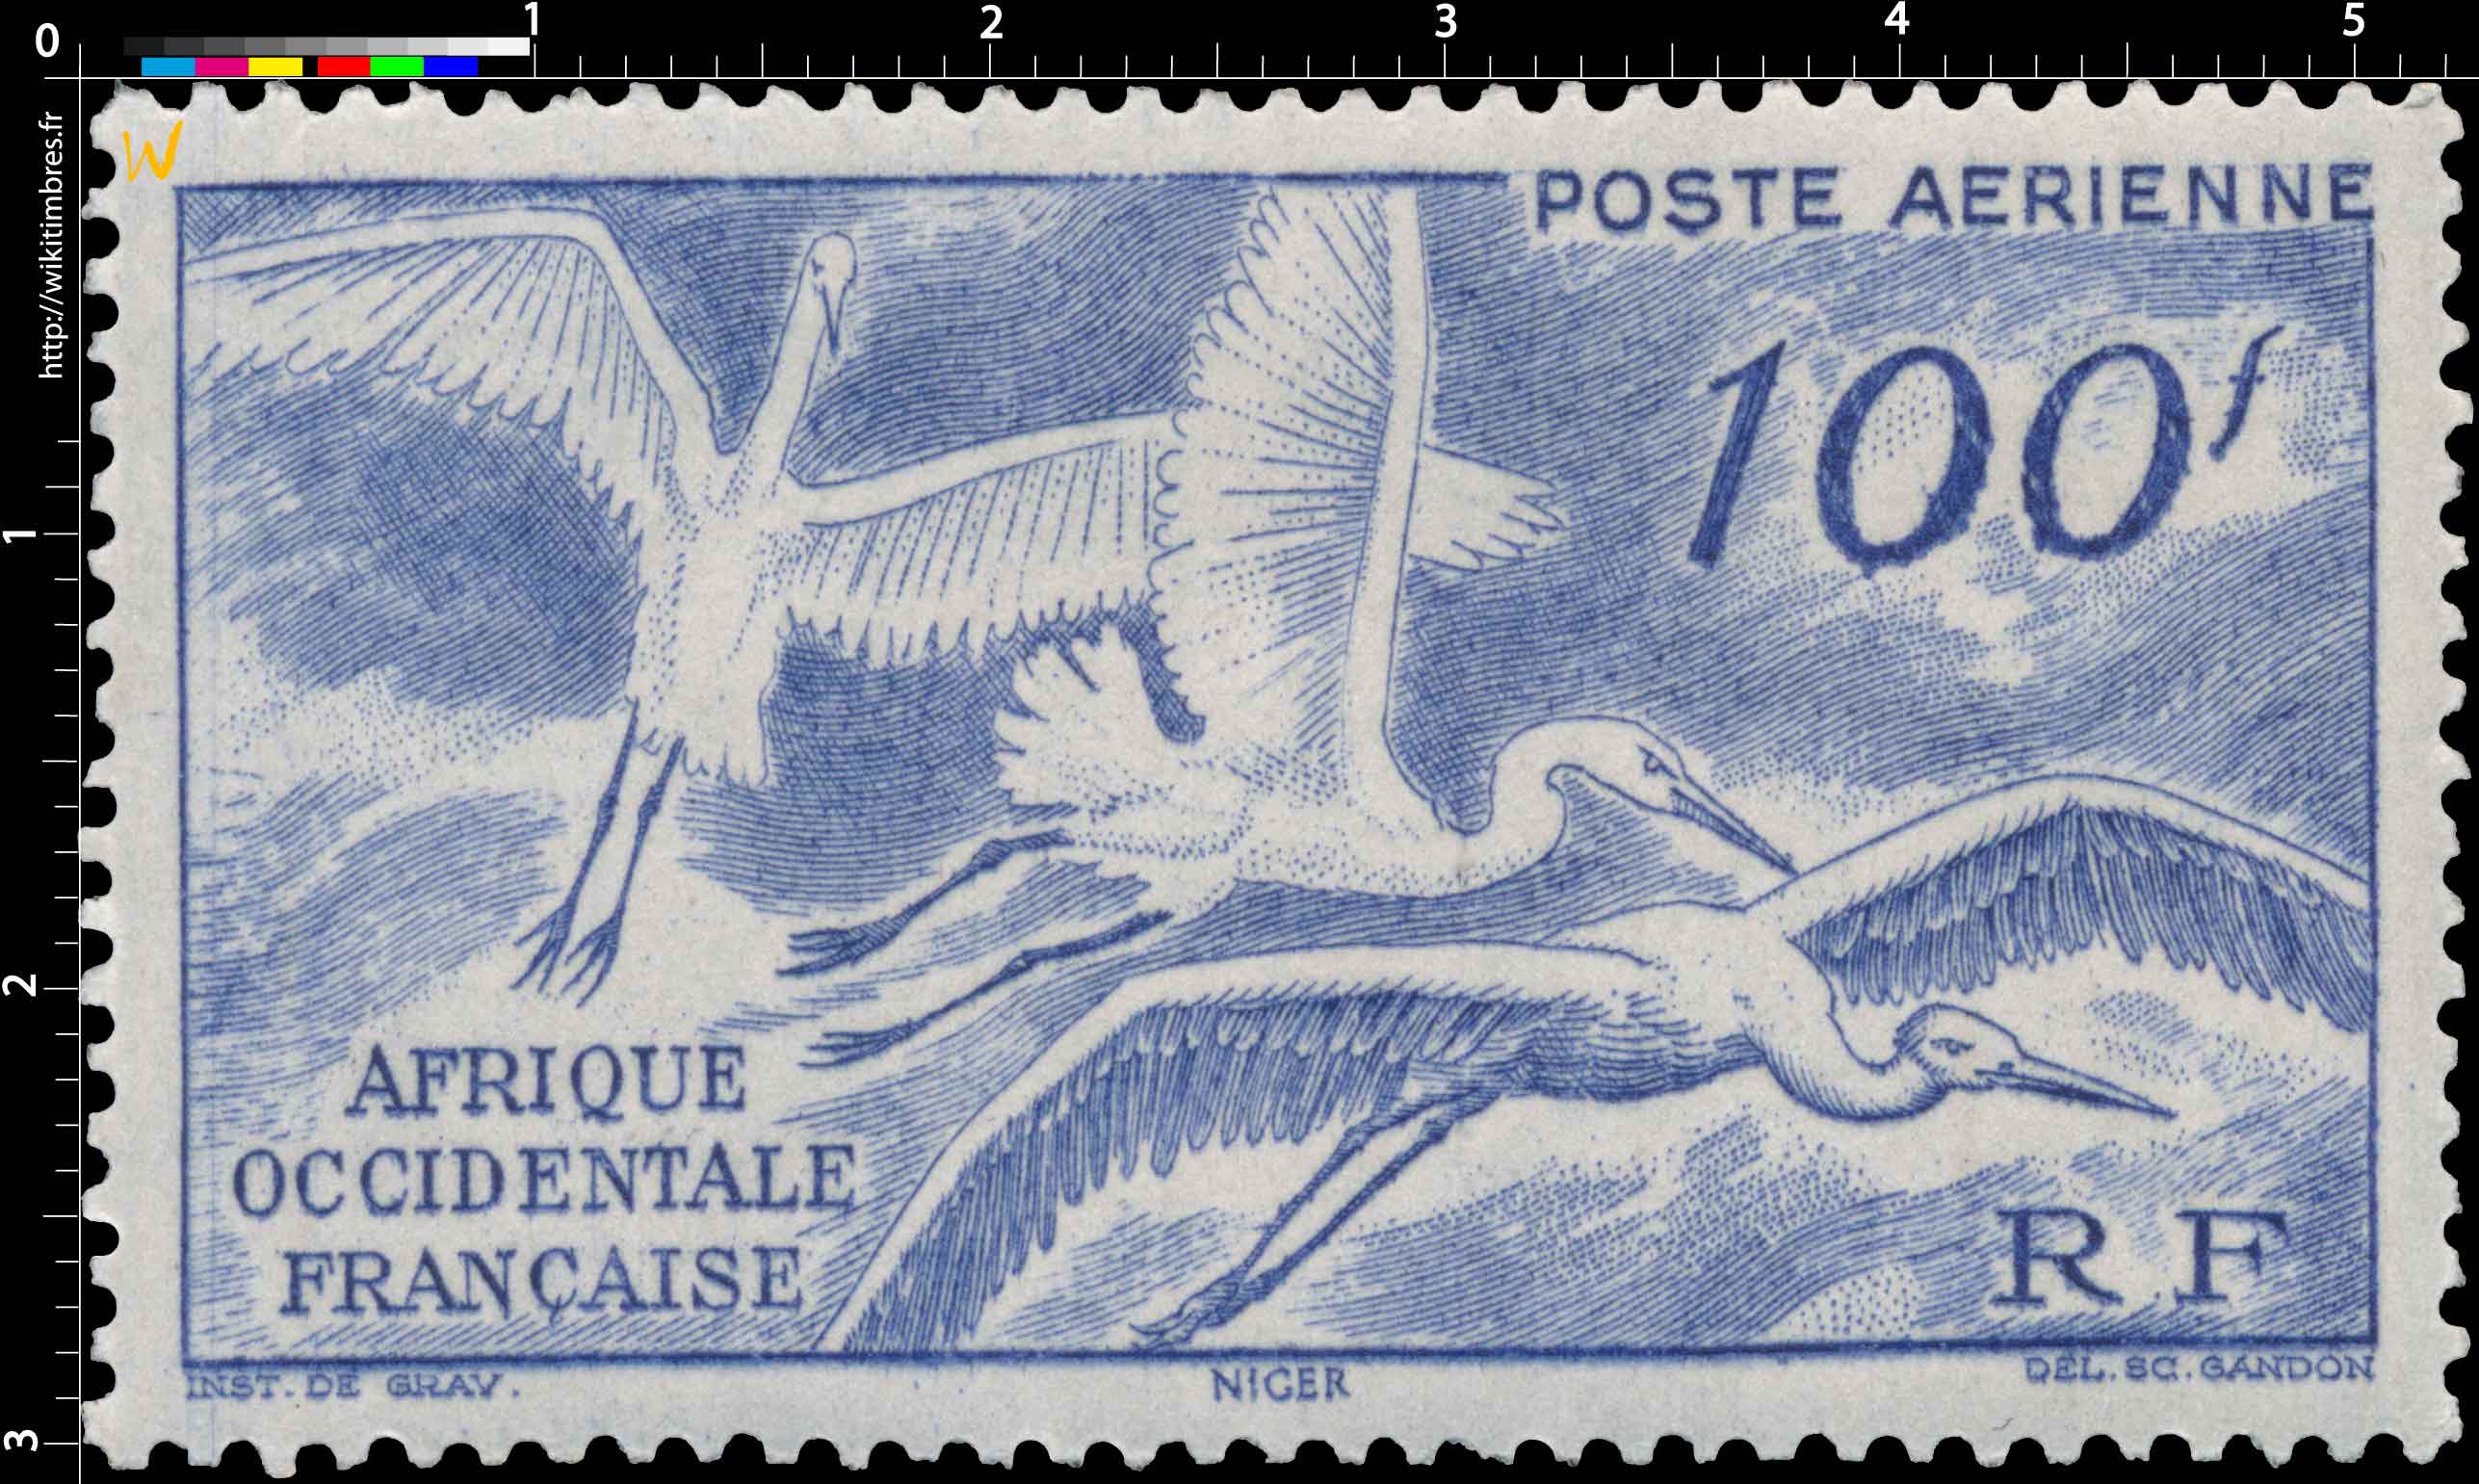 Afrique Occidentale Française - Cigognes en vol